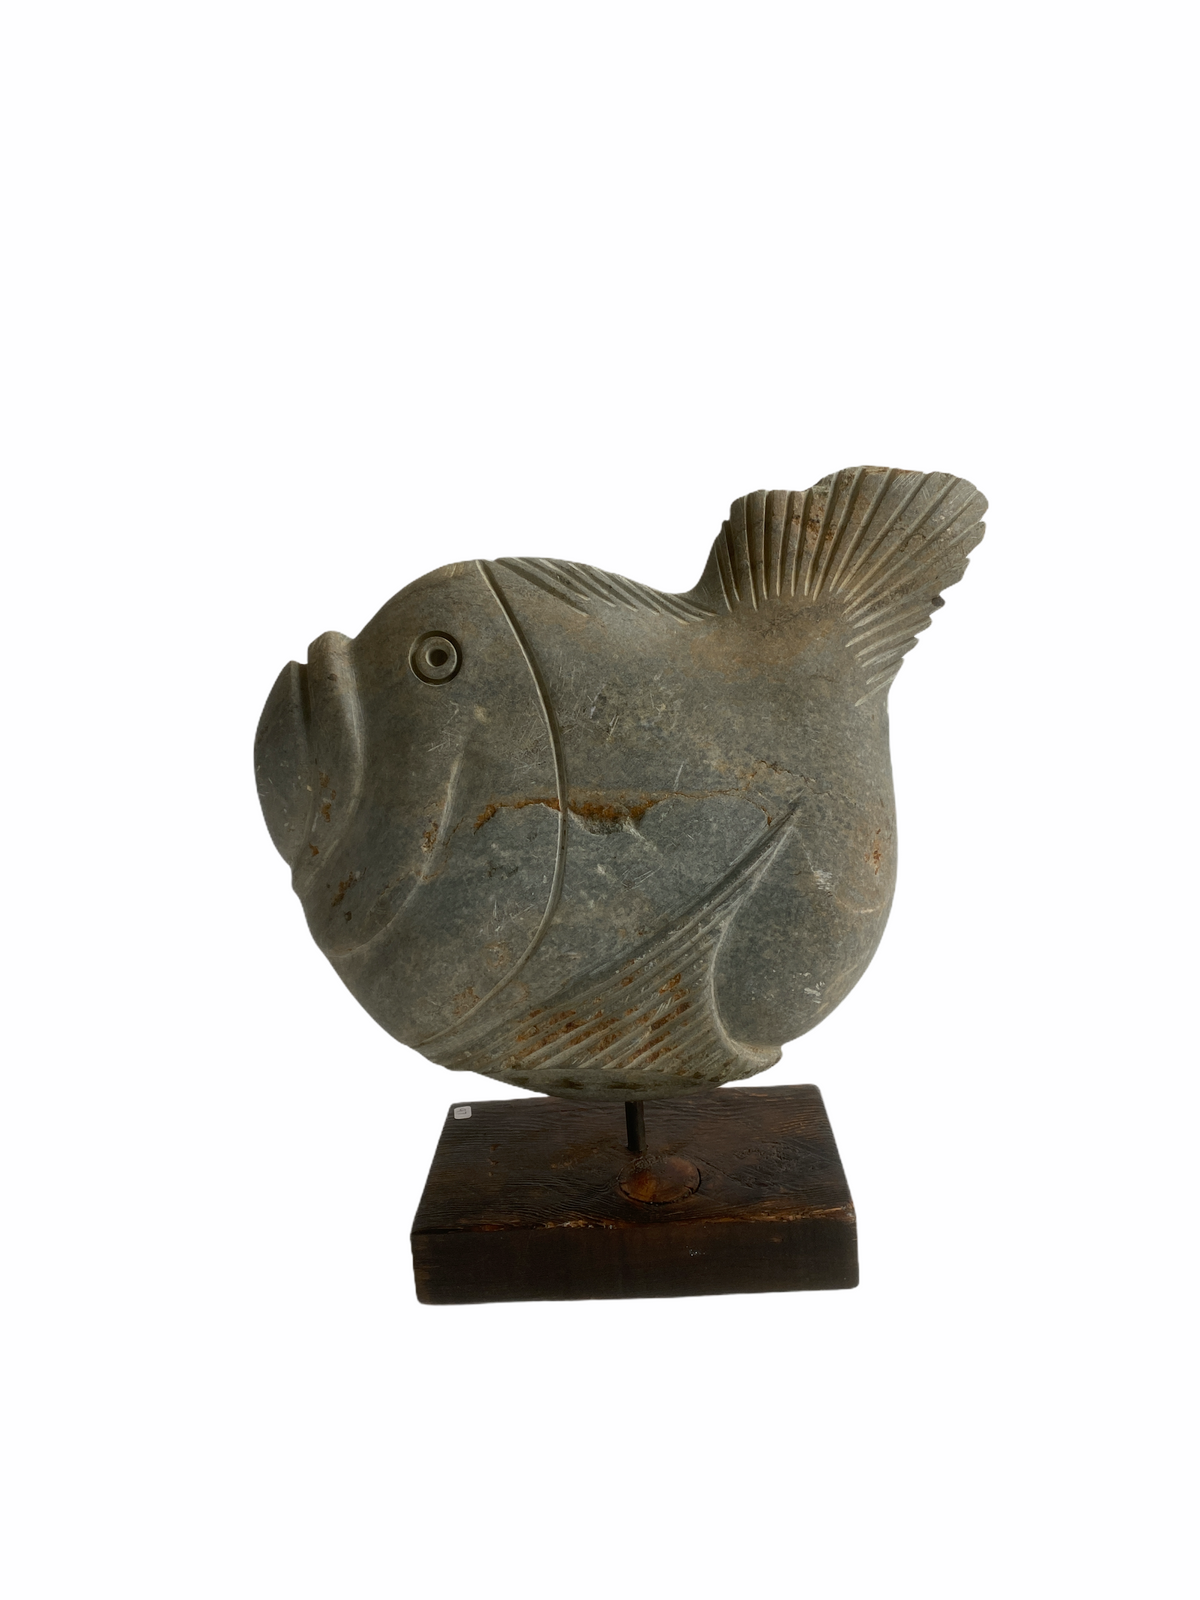 Stone Fish Sculpture - Zimbabwe (04)